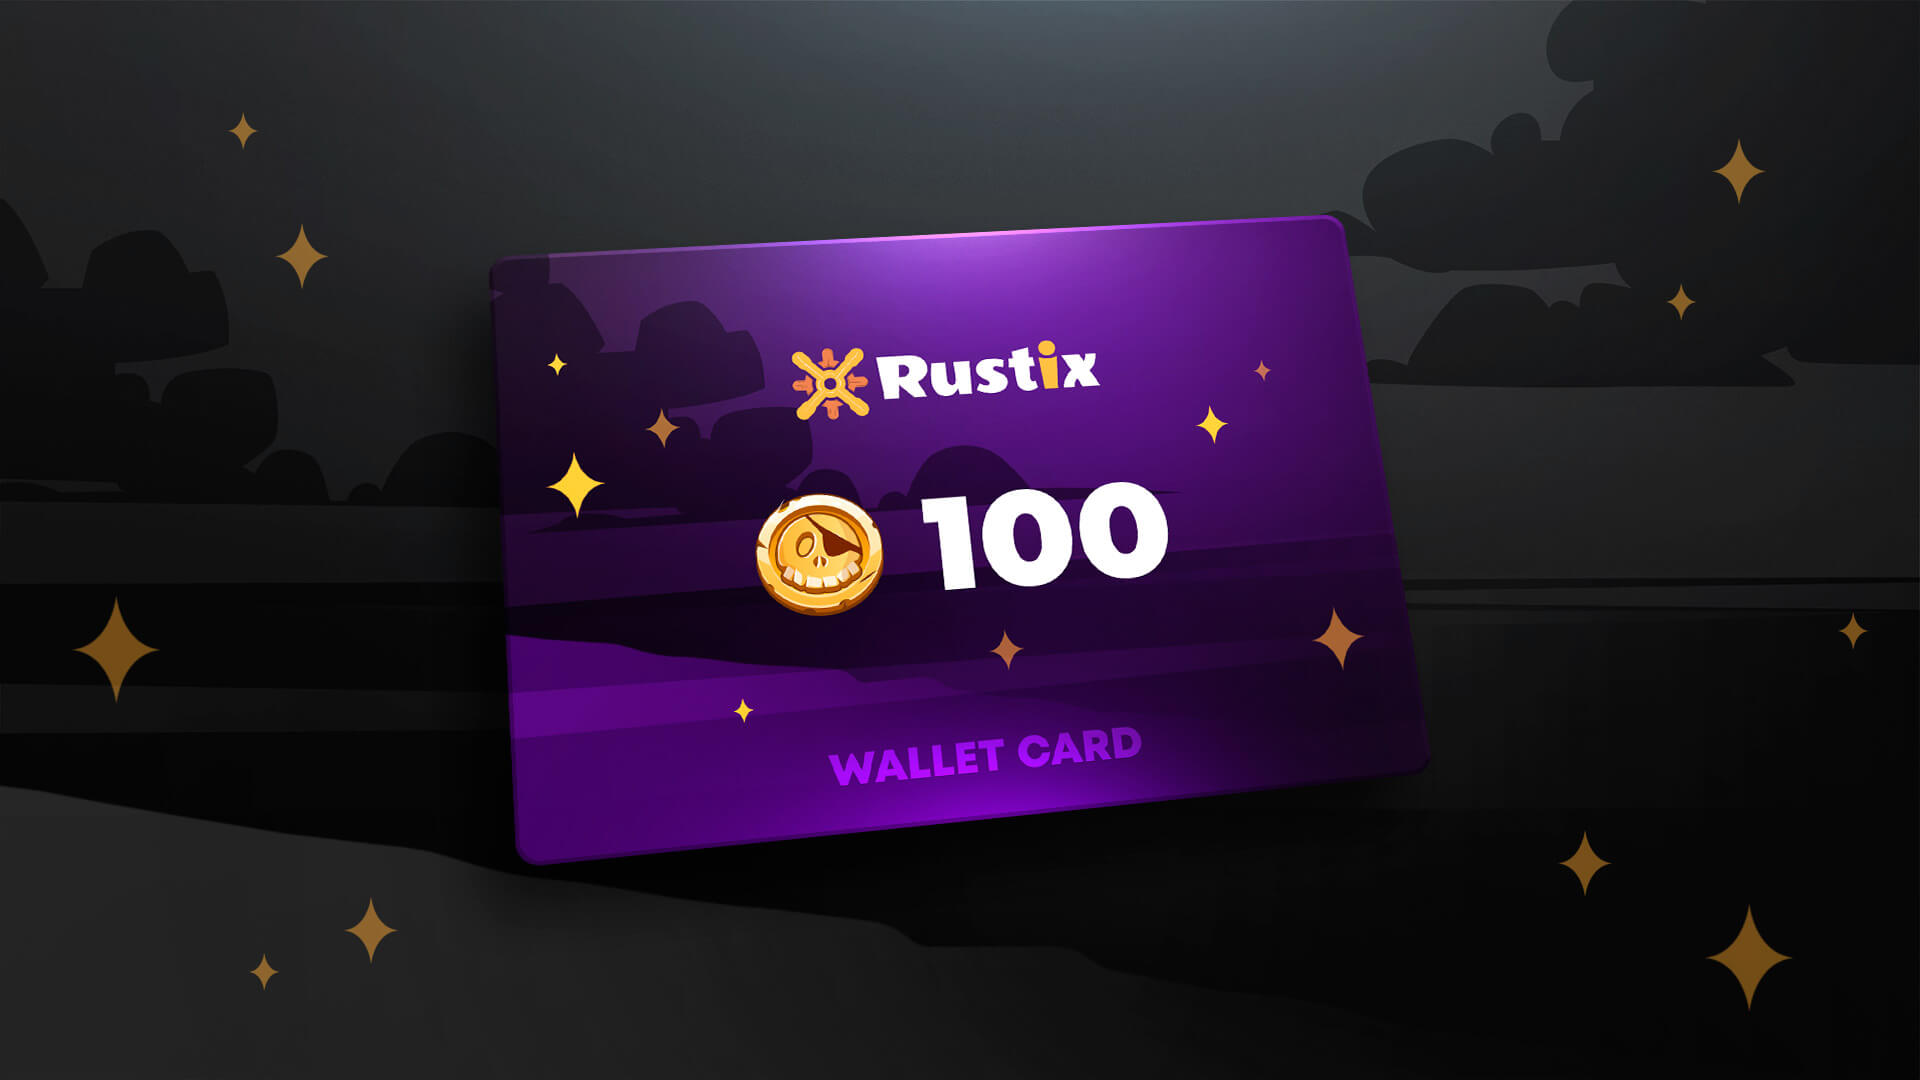 Rustix.io 100 USD Wallet Card Code 113$